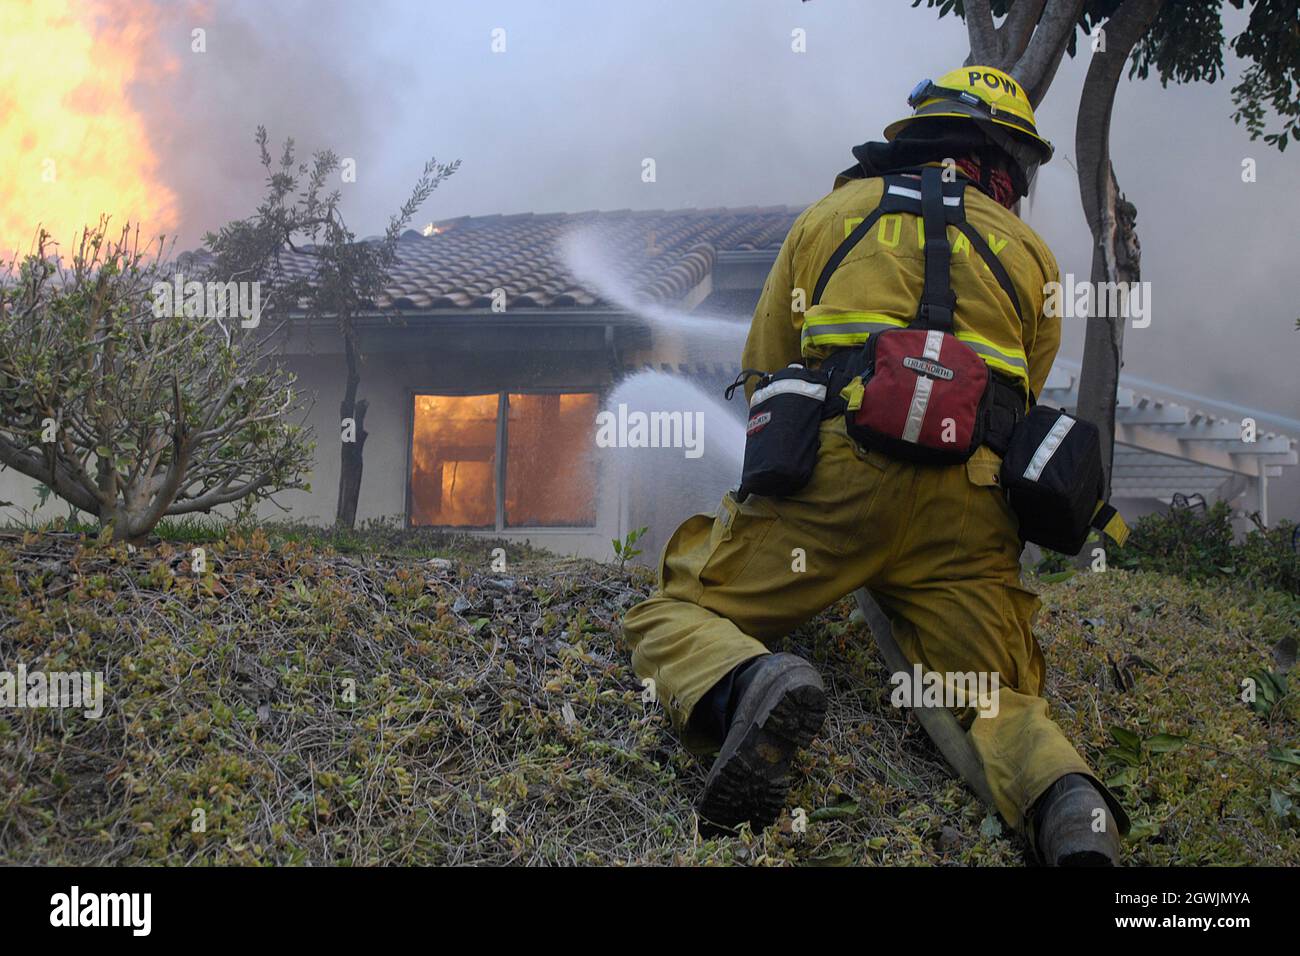 Der Feuerwehrmann von Poway leitet den Schlauchstrom während des Witch Creek Fire, 2007, in Richtung der Struktur. Die Struktur entzündete sich aufgrund brennender Glut, die unter dem Dach von Eben lag. Stockfoto